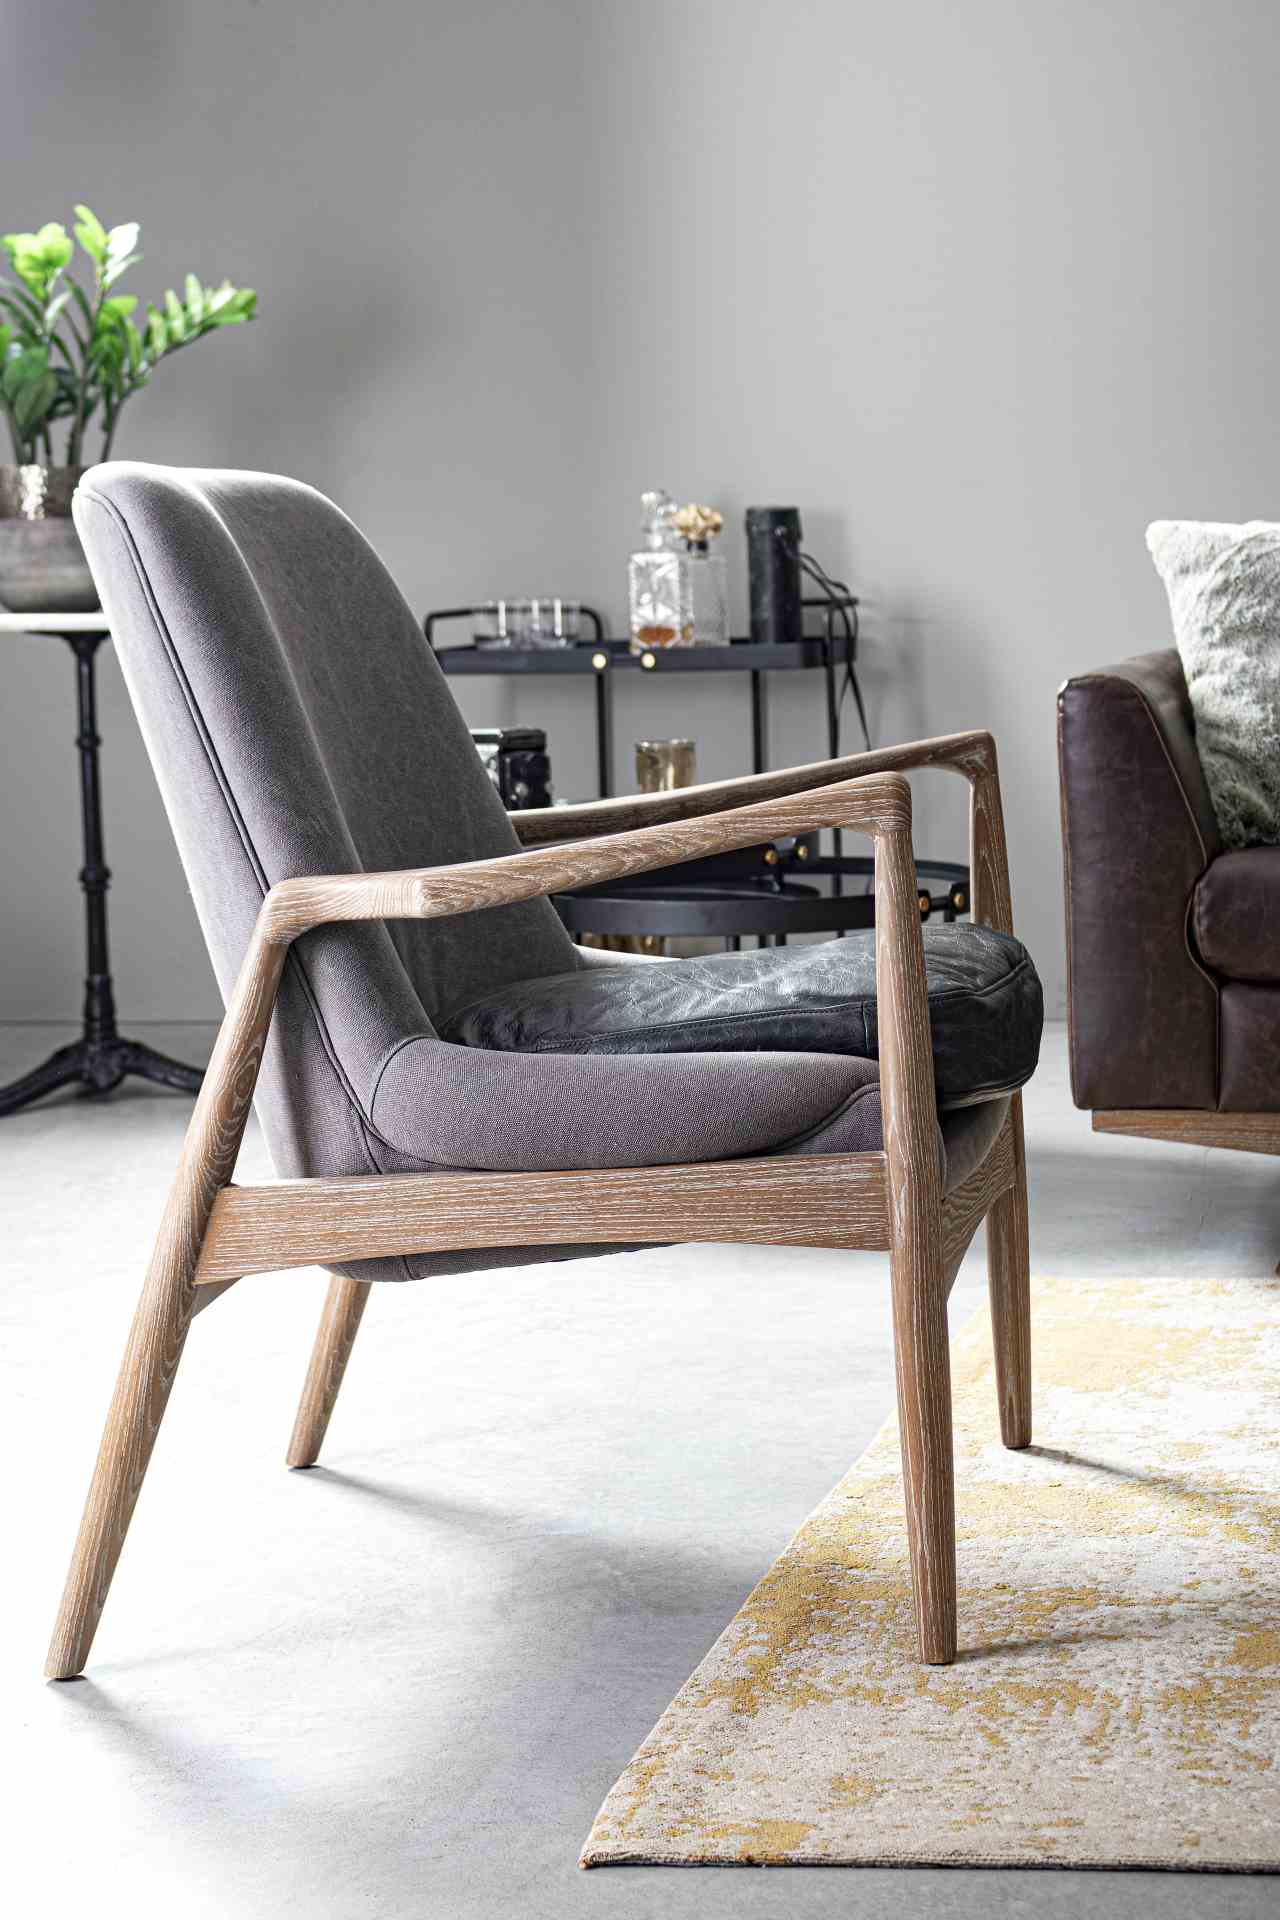 Der Sessel Marittas überzeugt mit seinem klassischen Design. Gefertigt wurde er aus Stoff, welcher einen grauen Farbton besitzt. Das Gestell ist aus Eschenholz und hat eine natürliche Farbe. Der Sessel besitzt eine Sitzhöhe von 46 cm. Die Breite beträgt 6